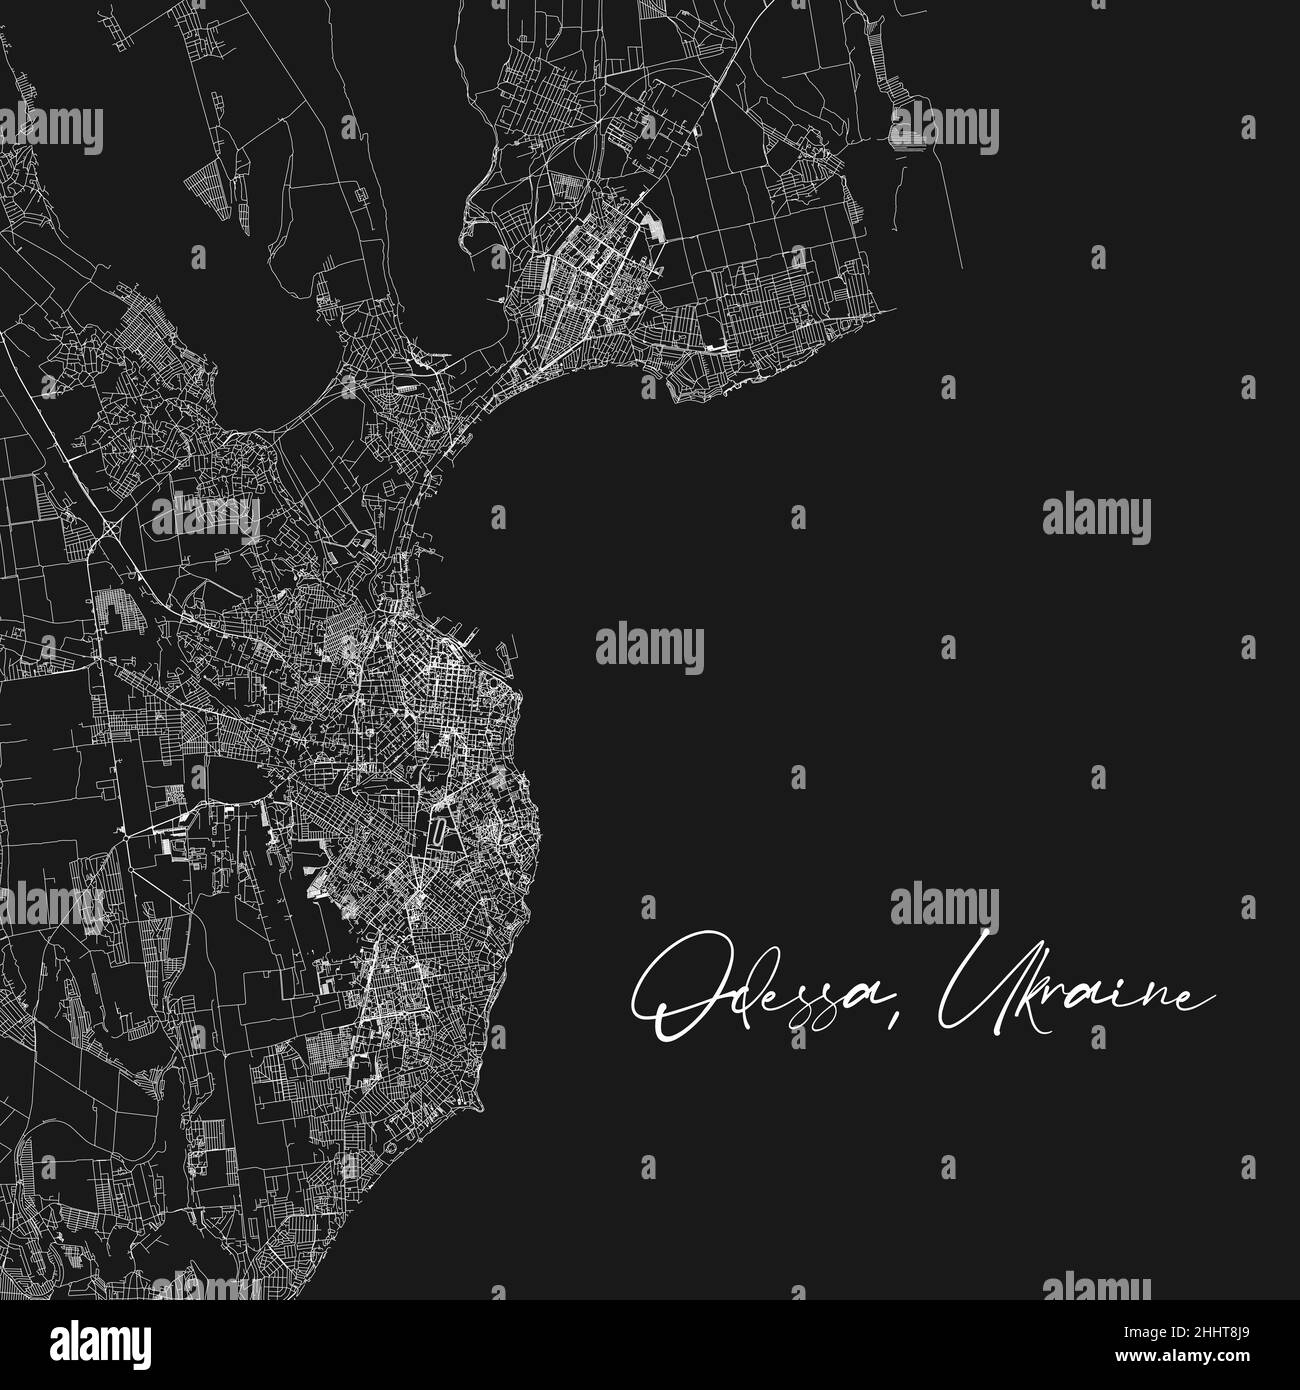 Odesa Odessa – Stadtplan in Schwarz-Weiß. Vektorgrafik, Odessa Karte Graustufen Kunstposter. Straßenkarte mit Straßen, Ansicht der Metropolregion. Stock Vektor